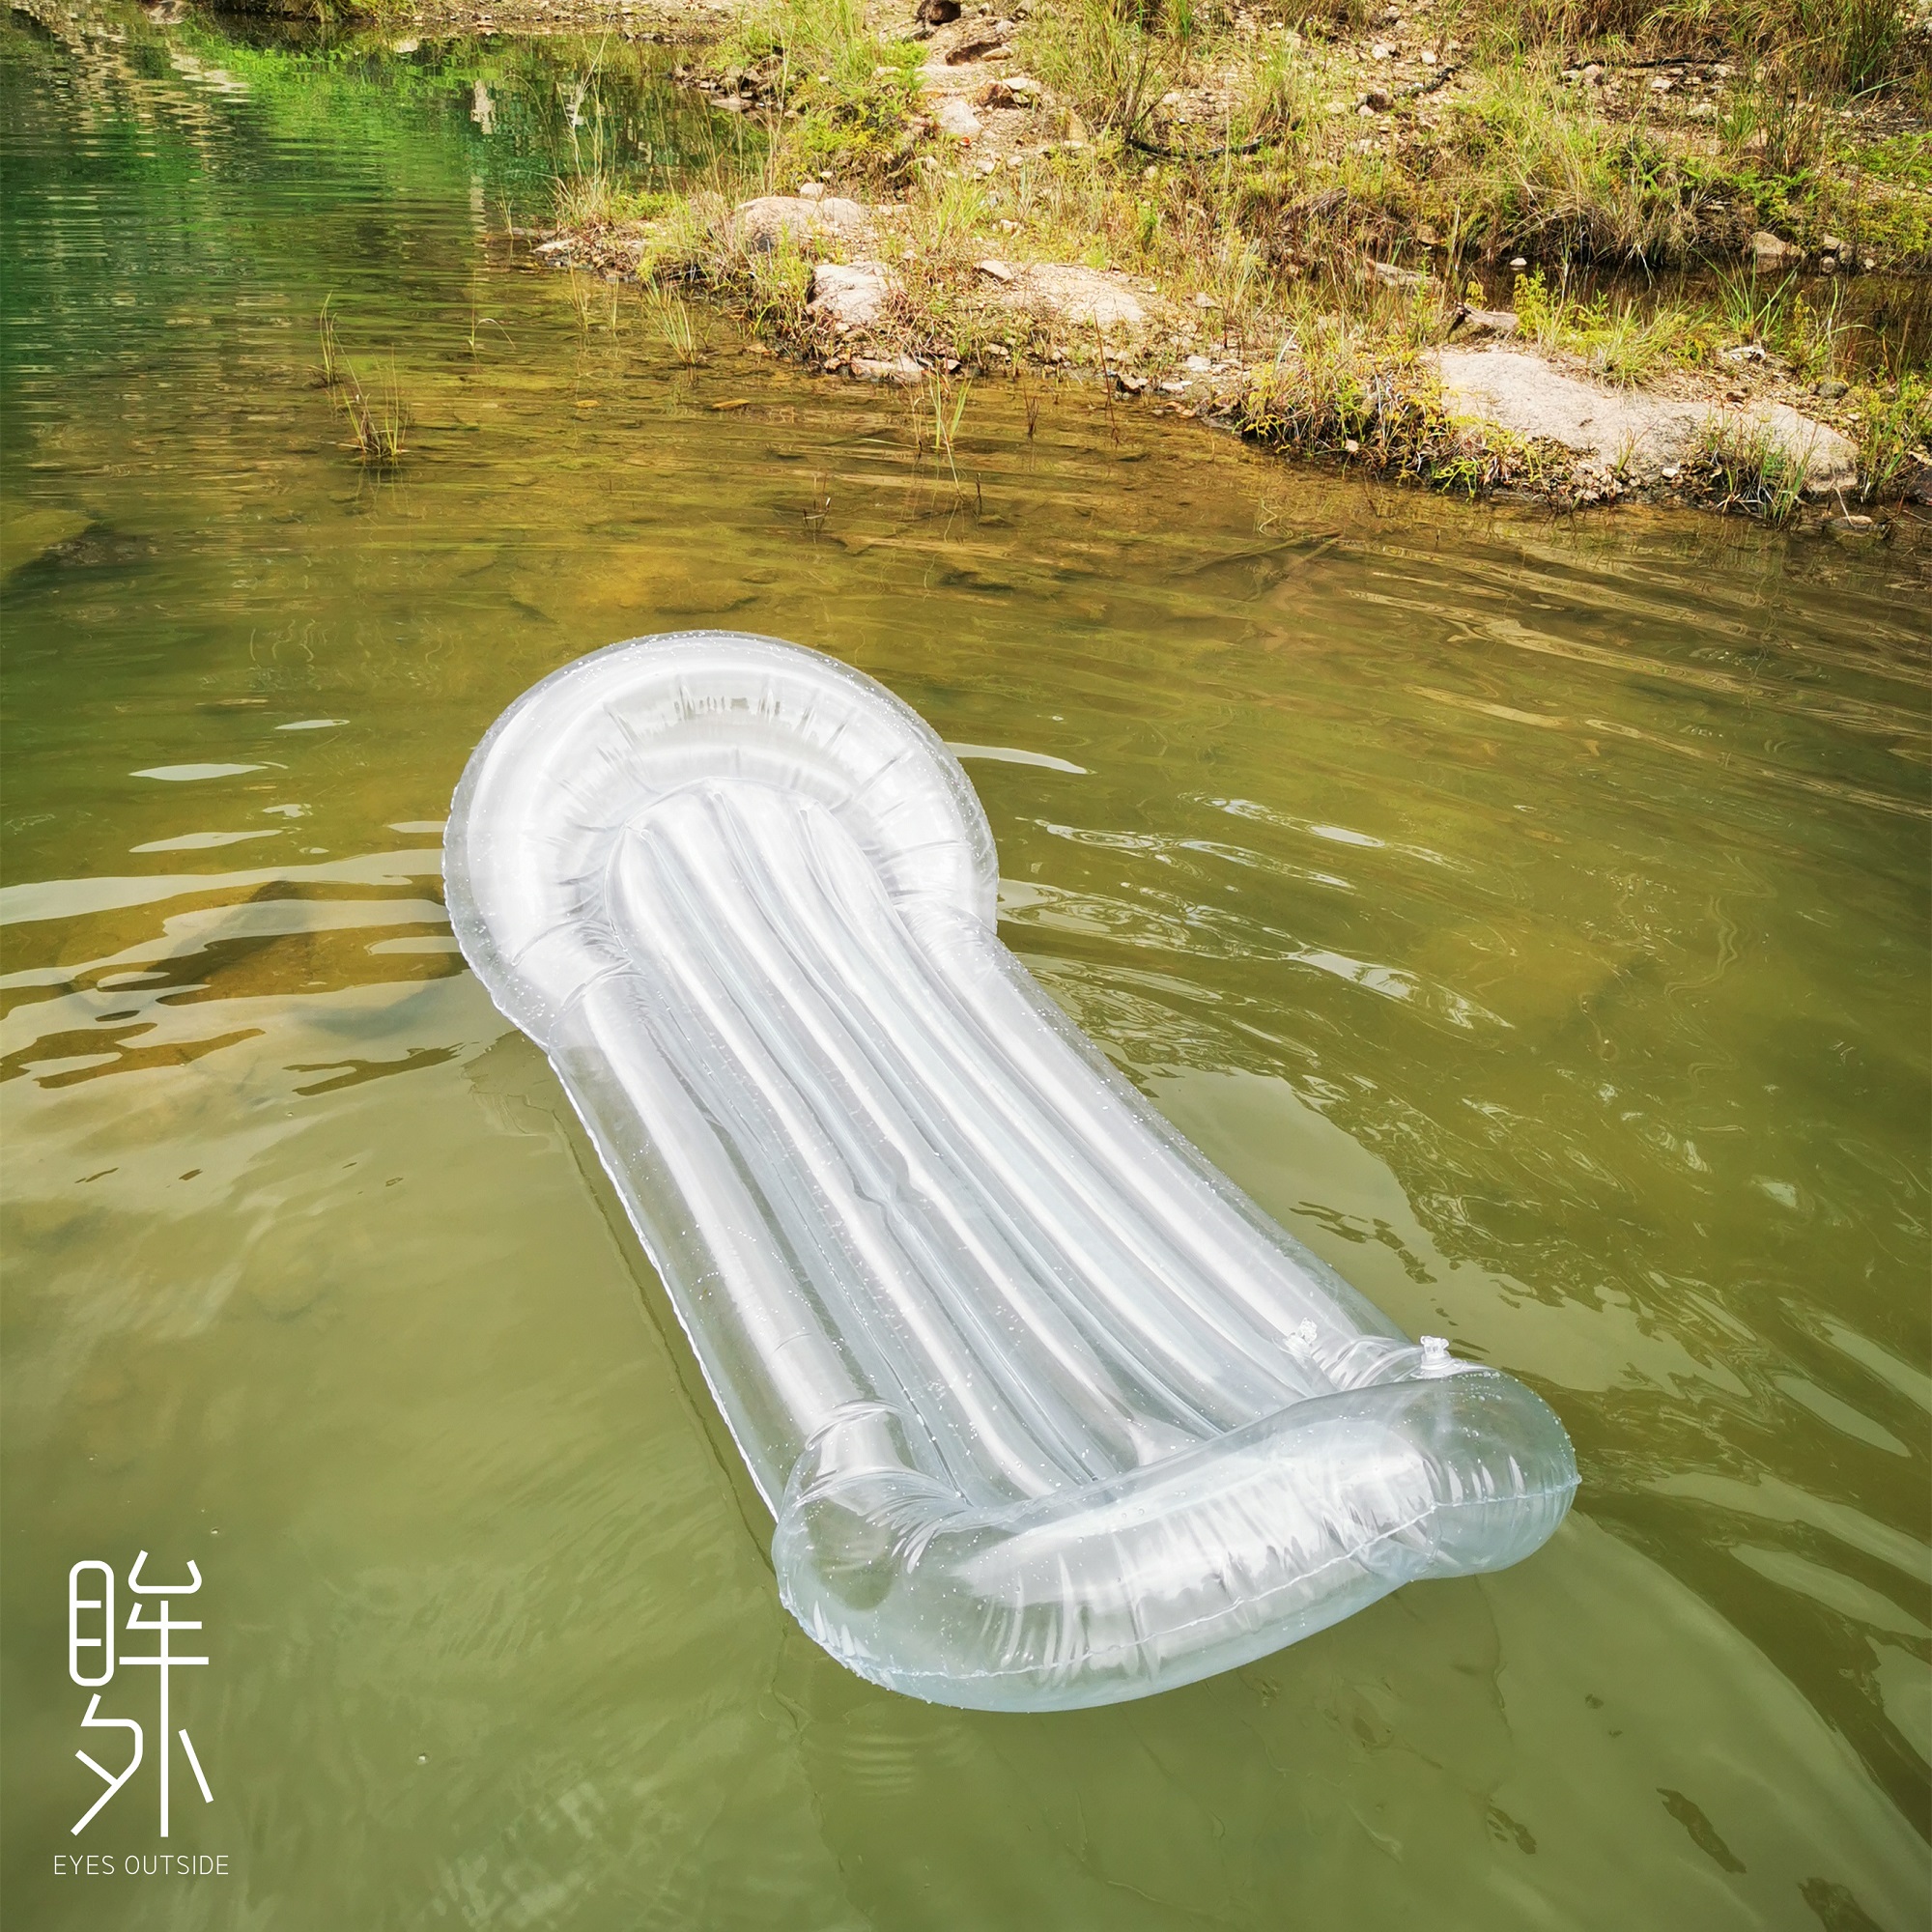 透明单人水上浮床水垫充气床游泳装备海边沙滩躺椅氛围拍照出片